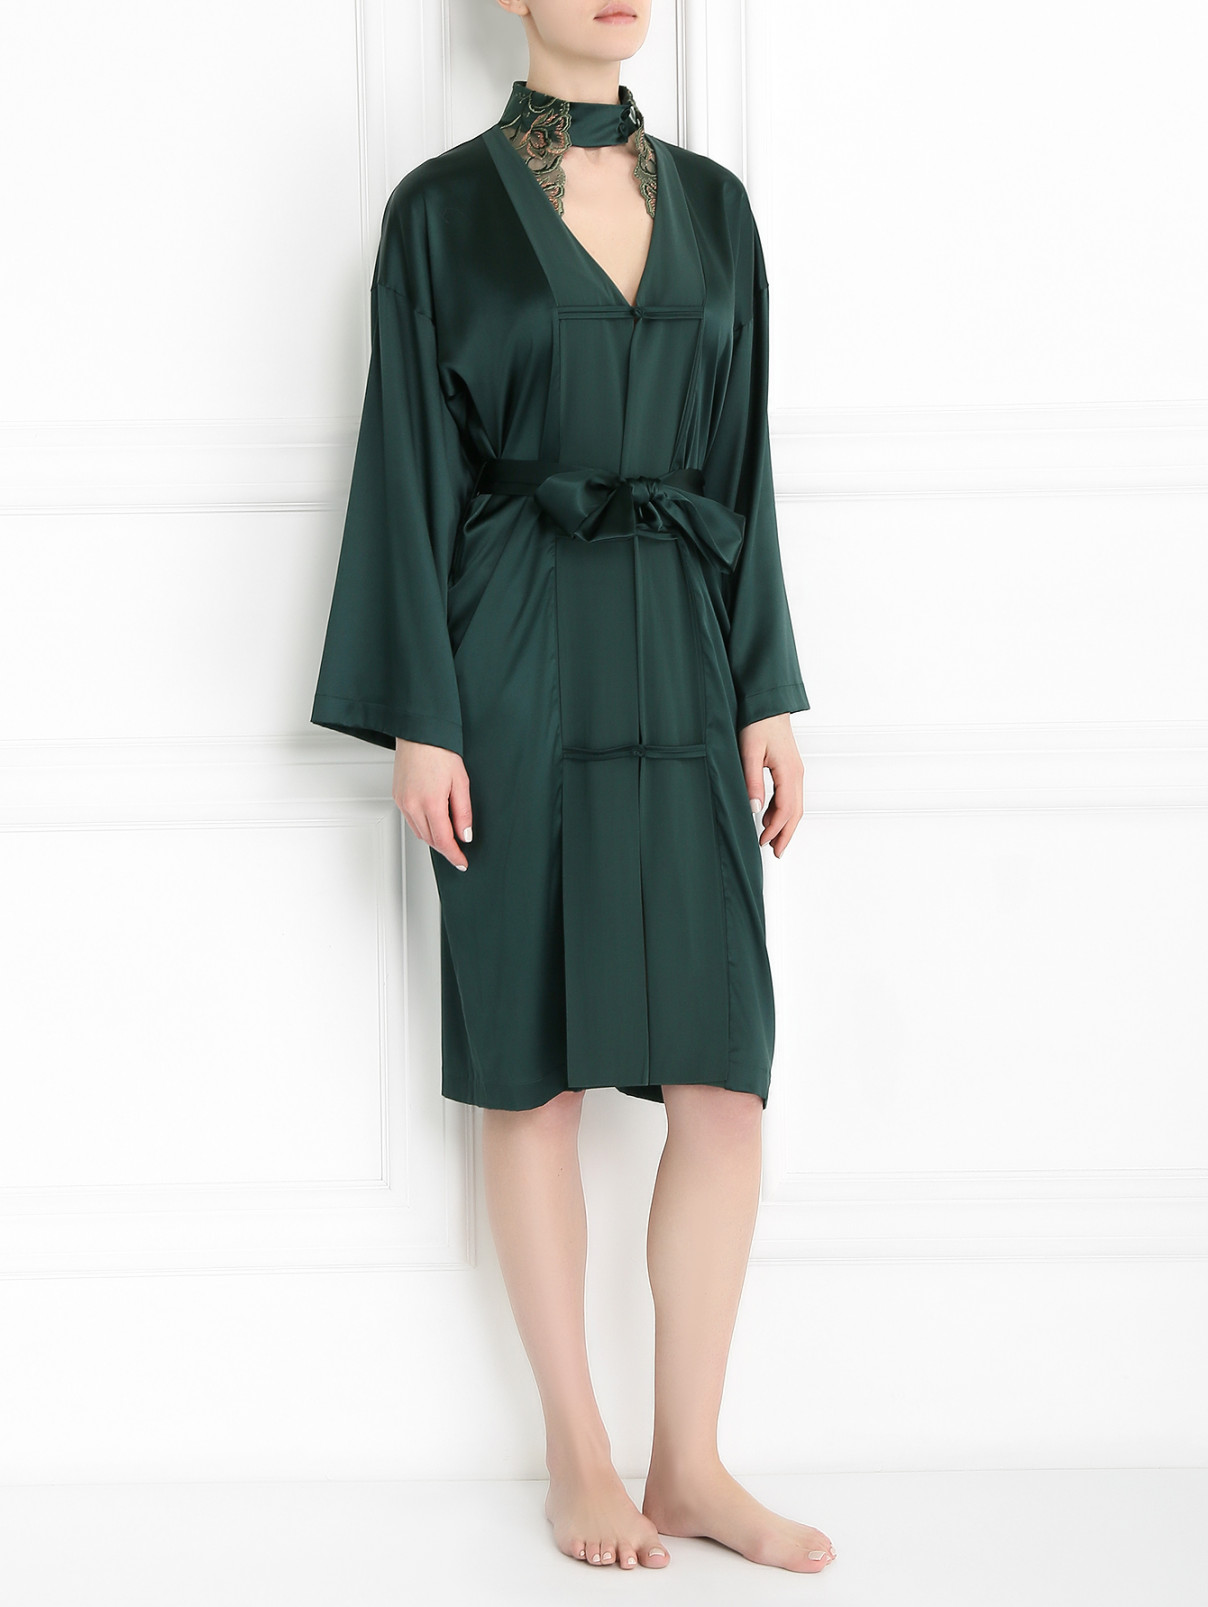 Халат из шелка с вышивкой La Perla  –  Модель Общий вид  – Цвет:  Зеленый